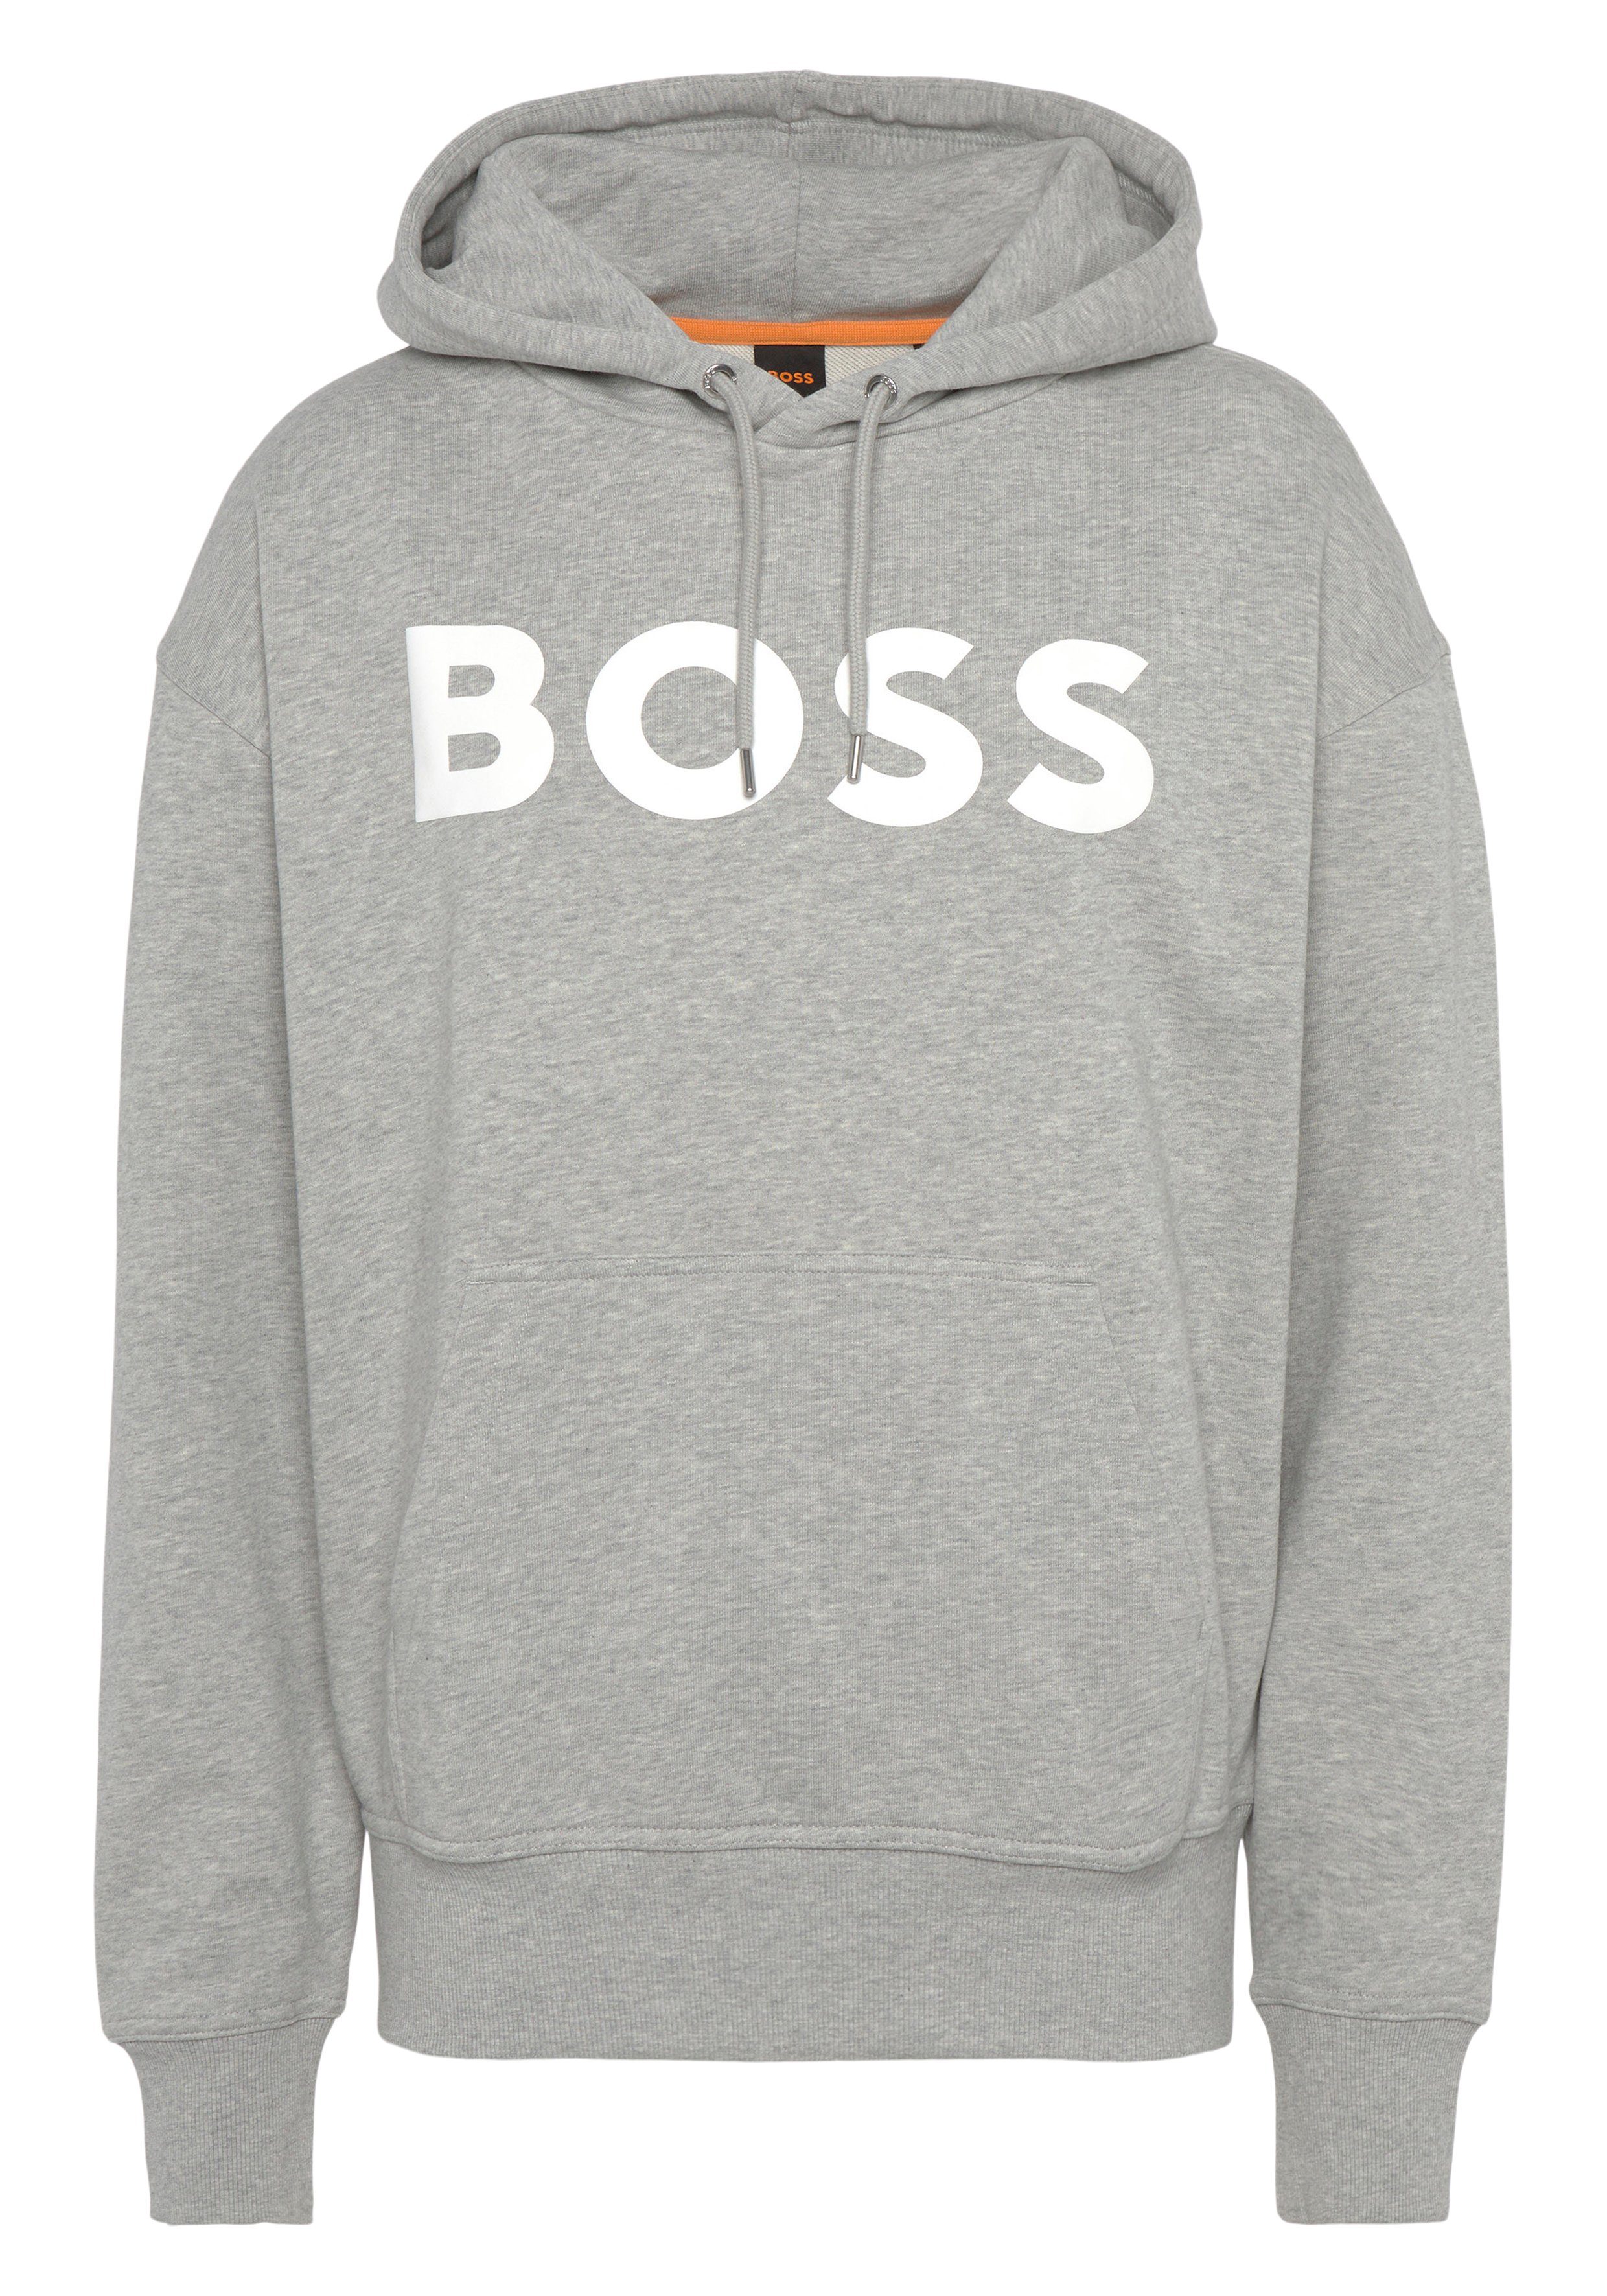 BOSS ORANGE Sweatshirt WebasicHood mit weißem Logodruck, Bequeme Kapuze mit  Kordelzug